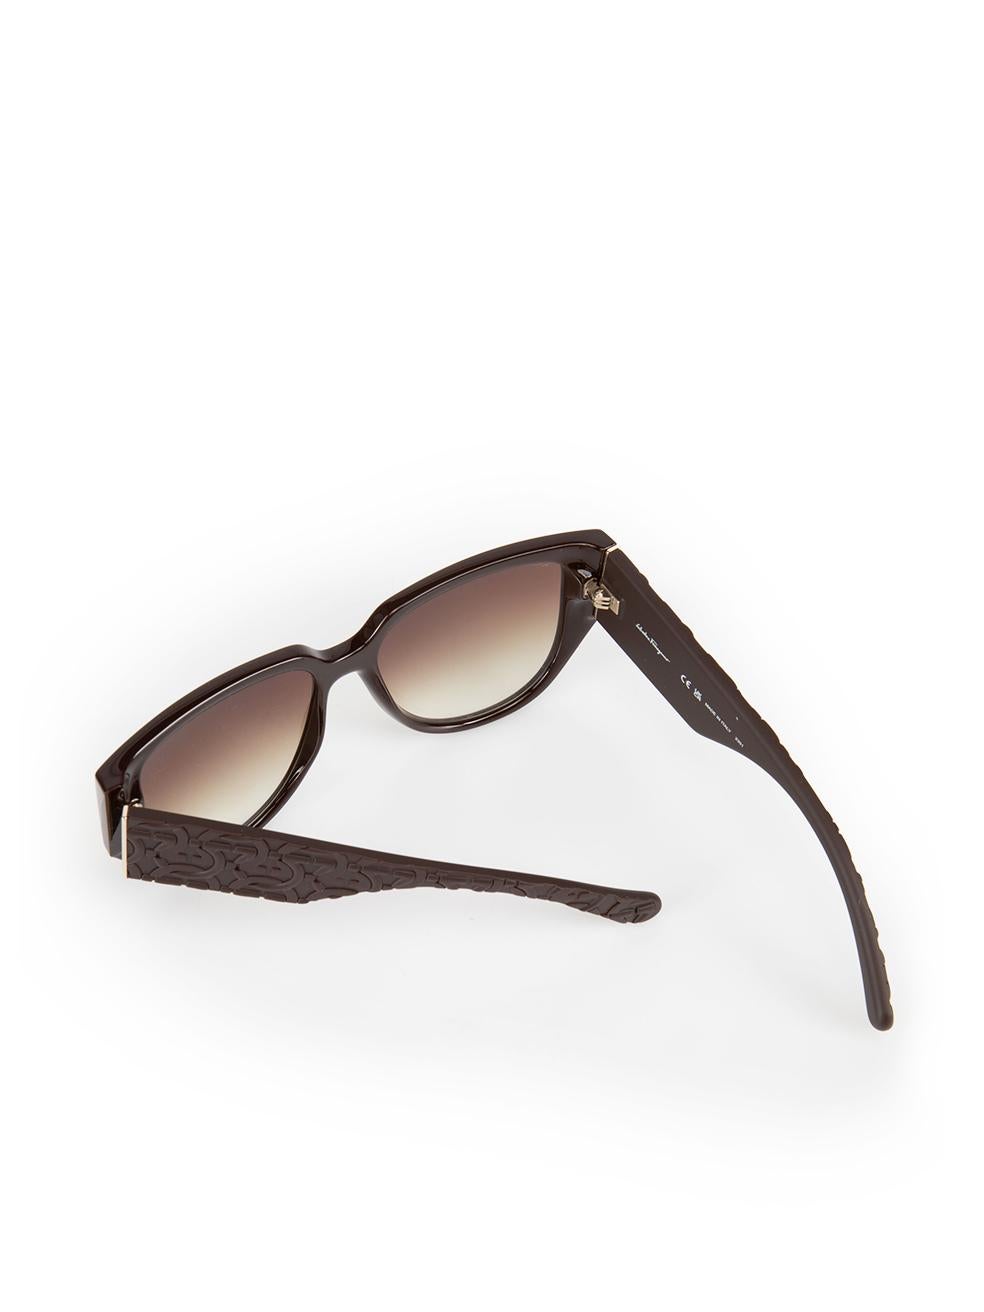 Salvatore Ferragamo Dark Brown Browline Gradient Sunglasses For Sale 3